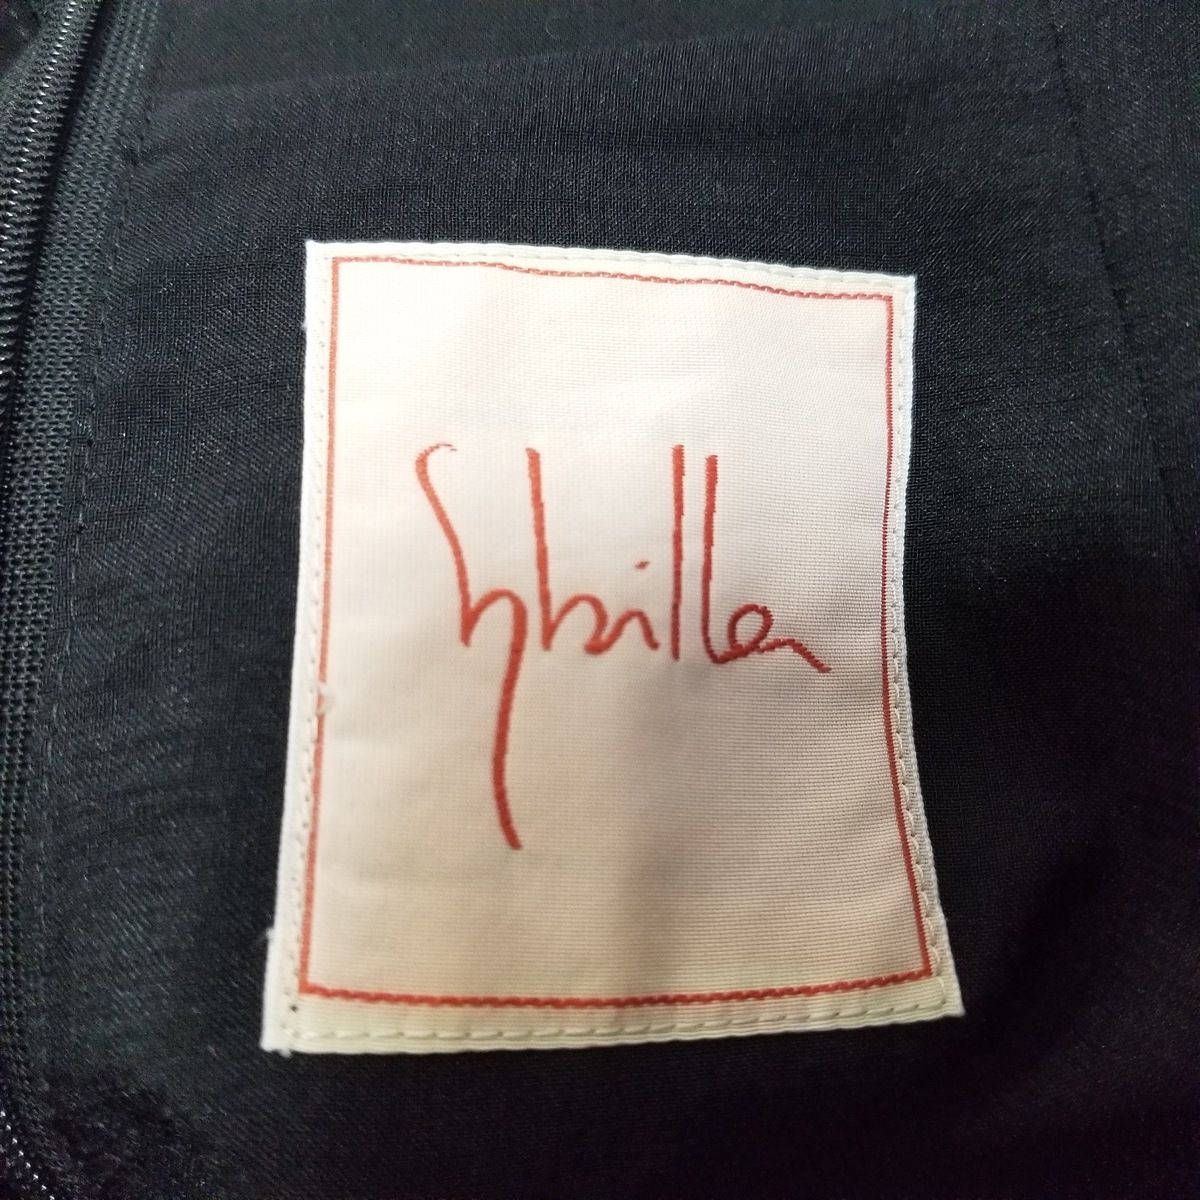 Sybilla(シビラ) ロングスカート サイズM レディース美品 - 黒 - メルカリ